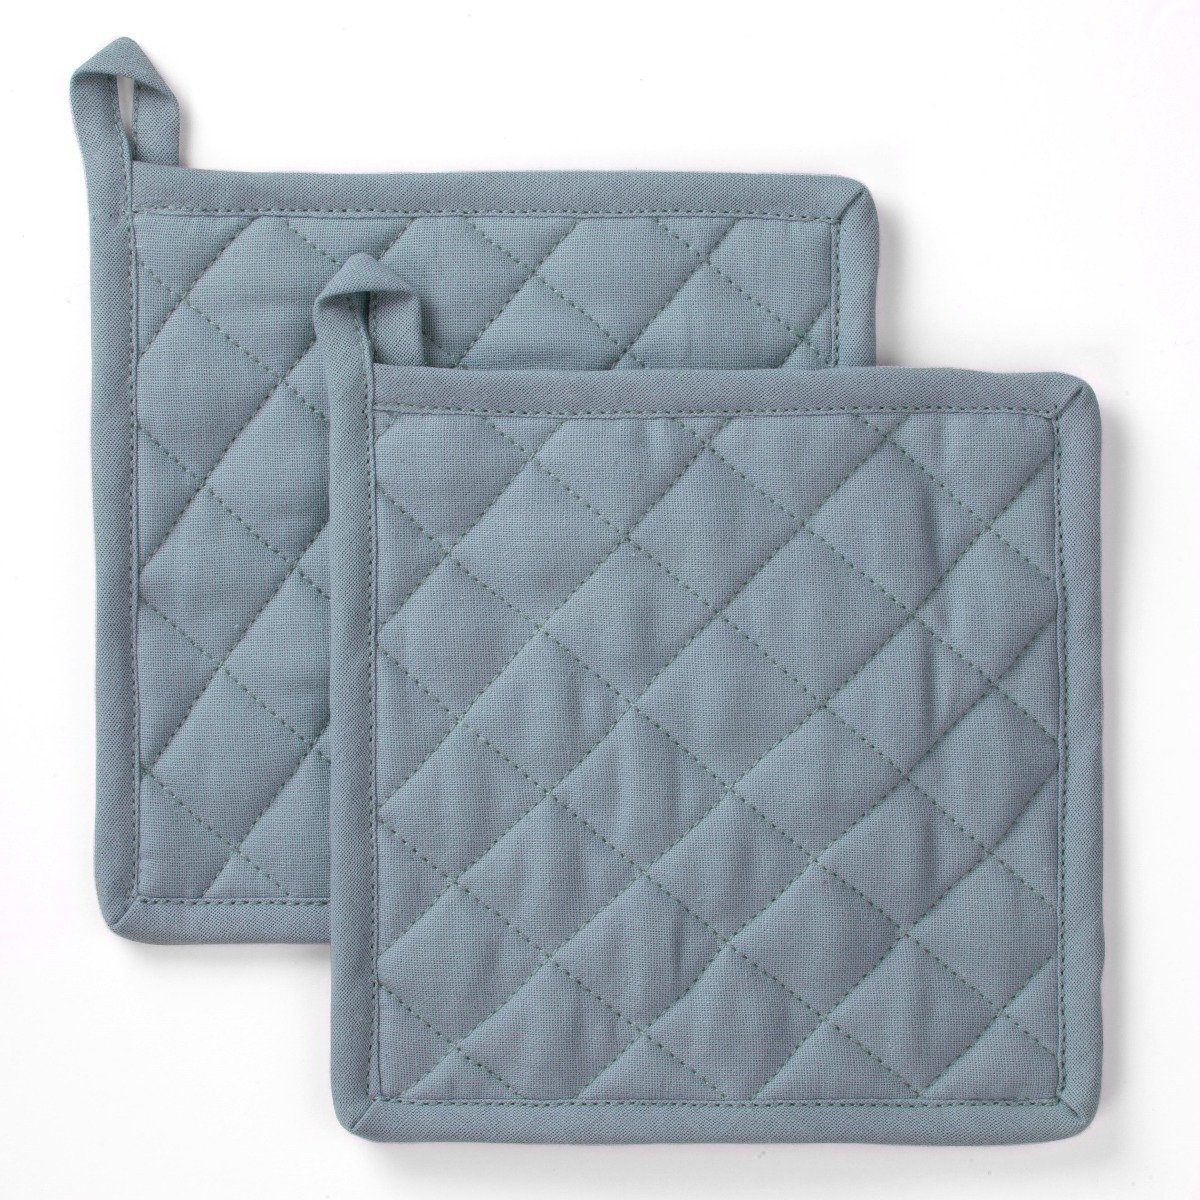 Byrklund Geschirrtuch Topflappen Stay Cold Blau - 2x 20x20 cm, aus 100% Baumwolle, Premium-Qualität - Vielfältig einsetzbares